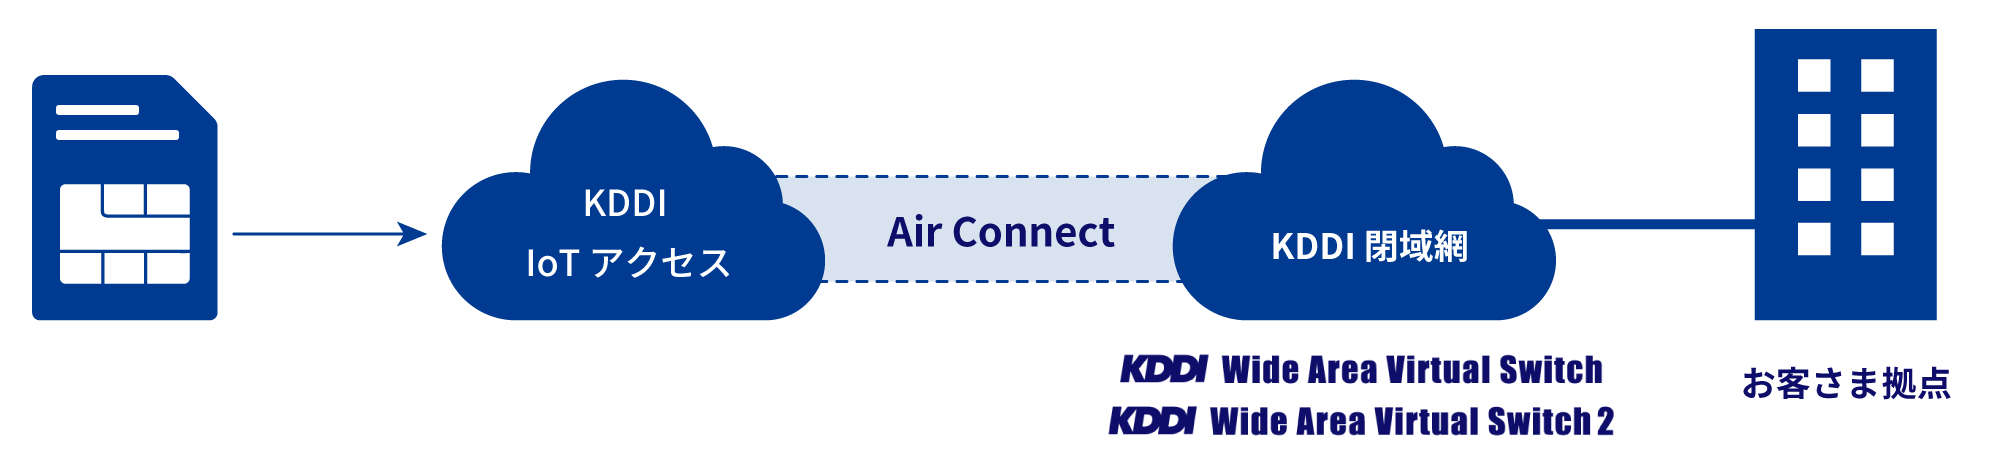 KDDI IoT アクセス→Air Connect→KDDI閉域網 (KDDI WVS / WVS 2)→お客さま拠点